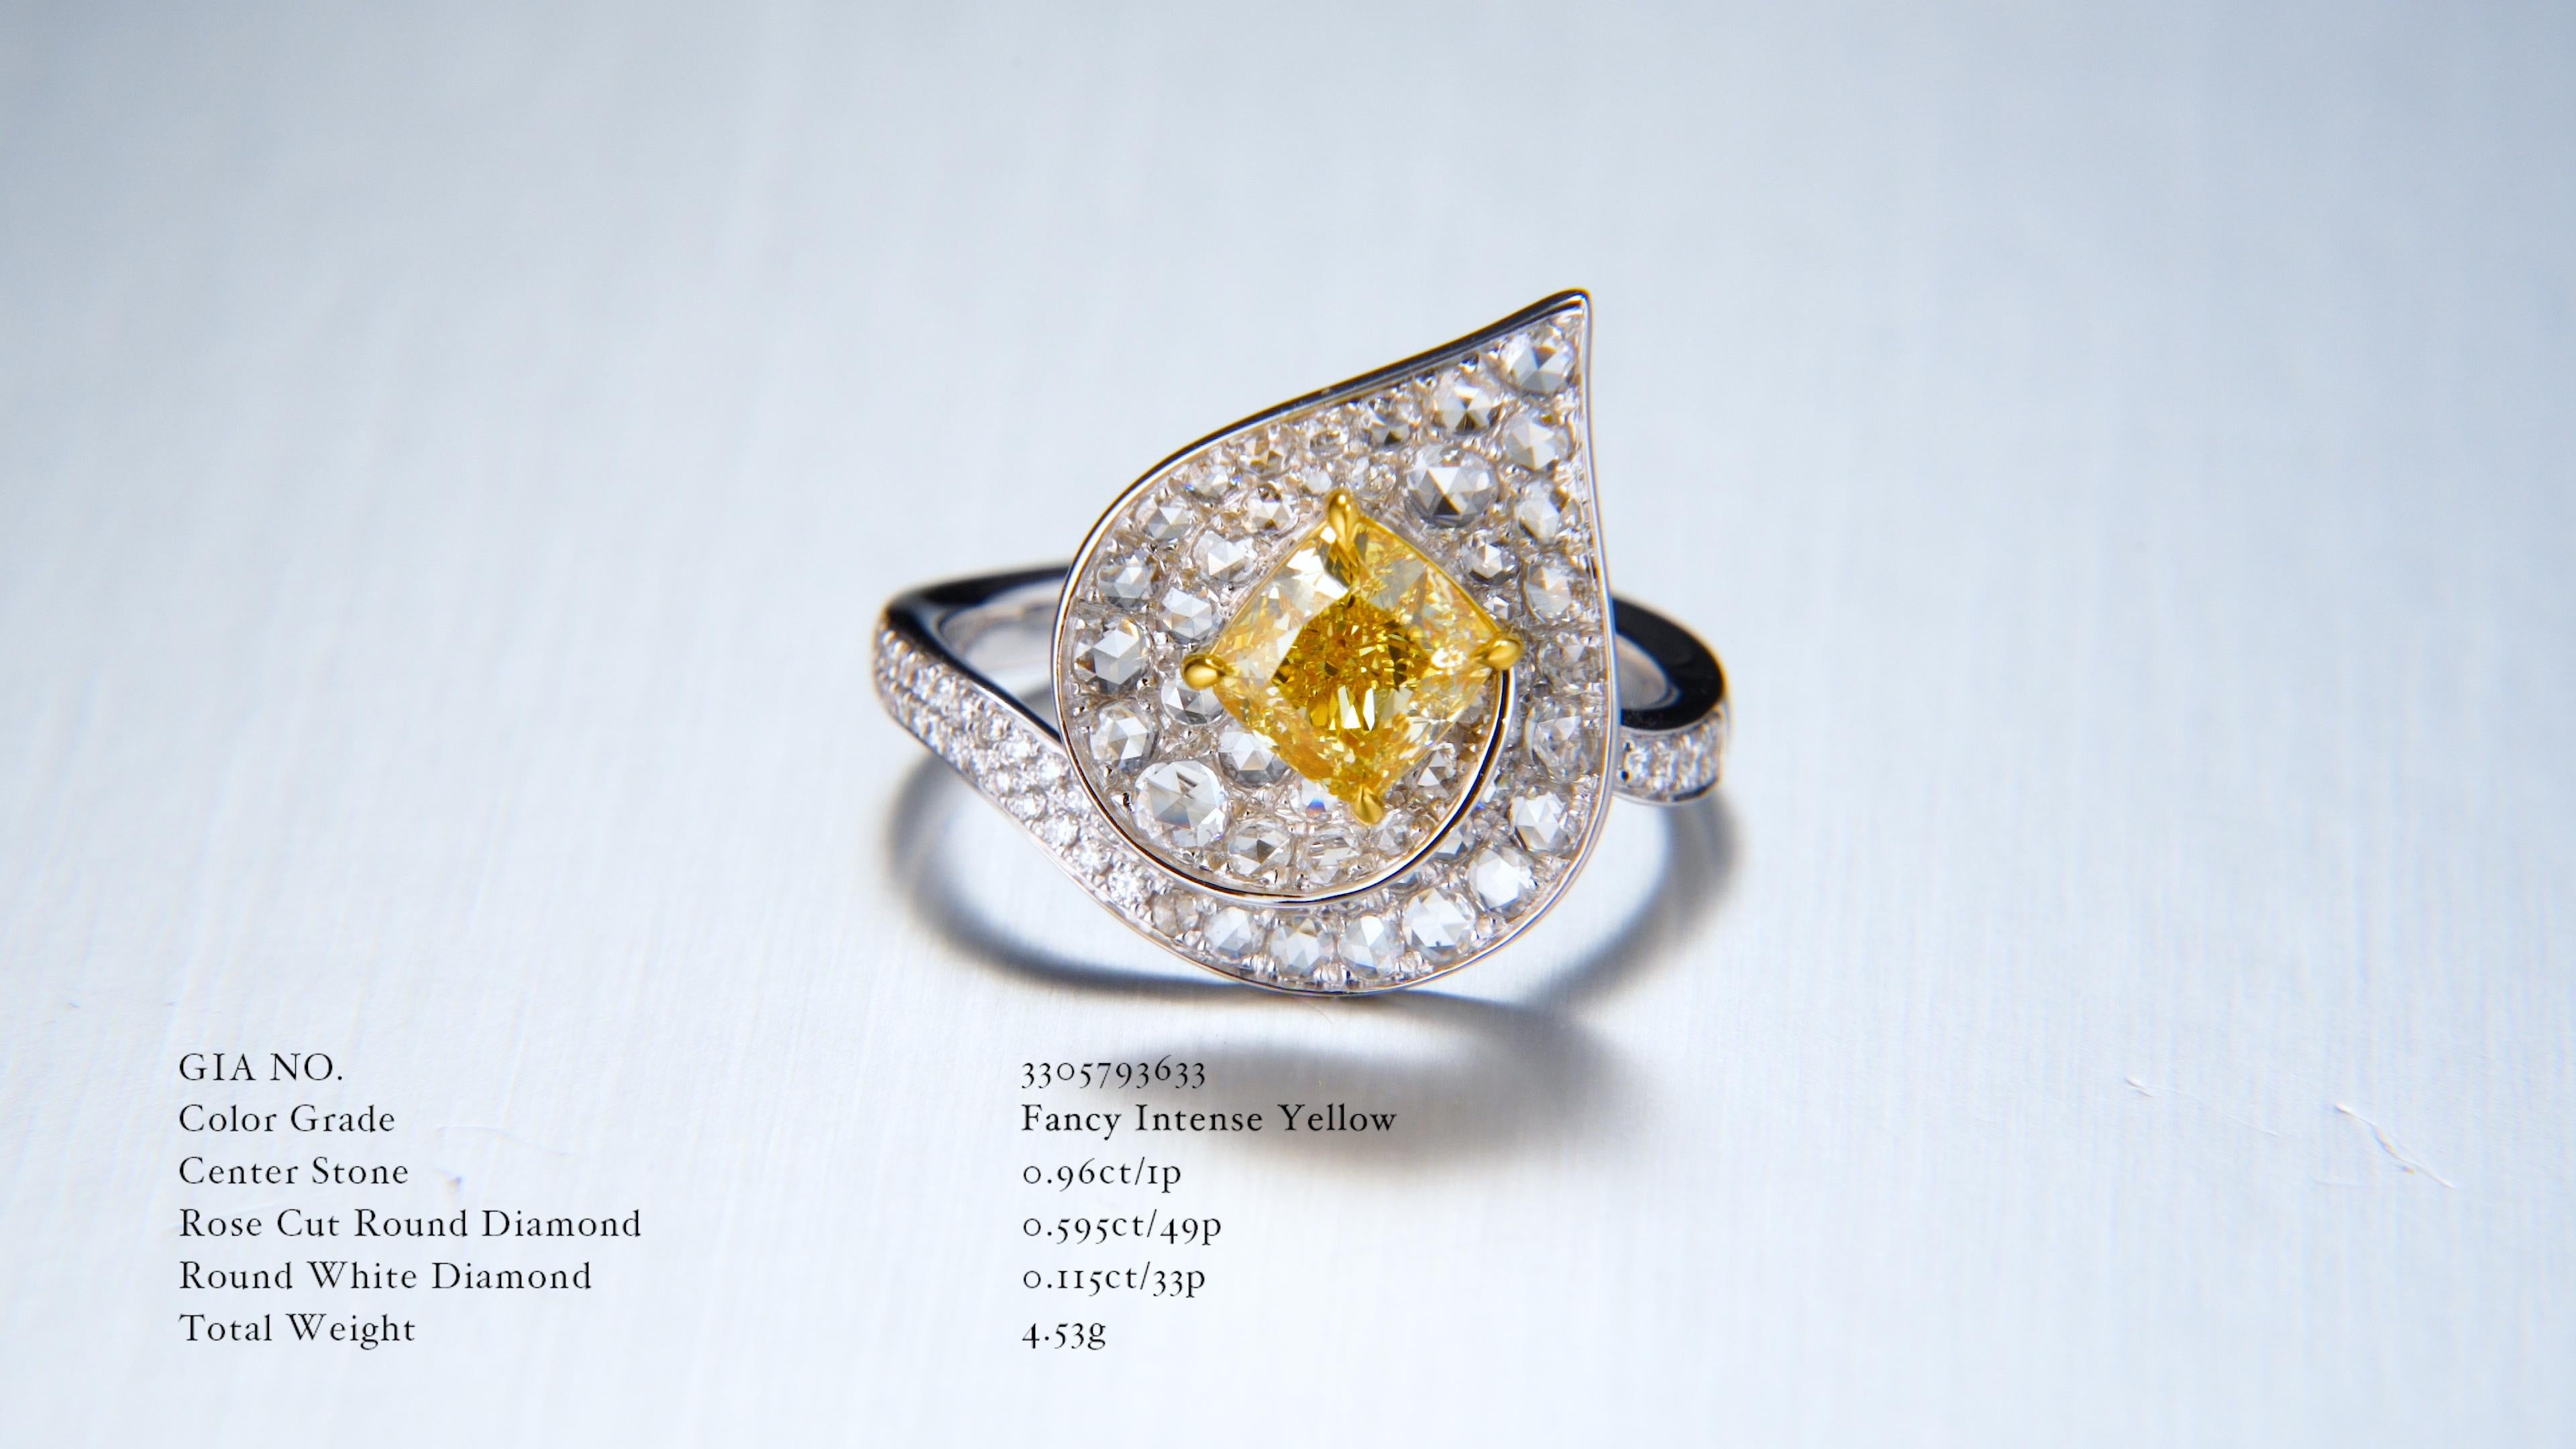 Bague en diamant certifié GIA de 0,96ct Natural Fancy Intense Yellow, un témoignage envoûtant de la beauté des pierres rares. Cette bague extraordinaire, méticuleusement réalisée en or 18kt, respire l'élégance et la sophistication à chaque